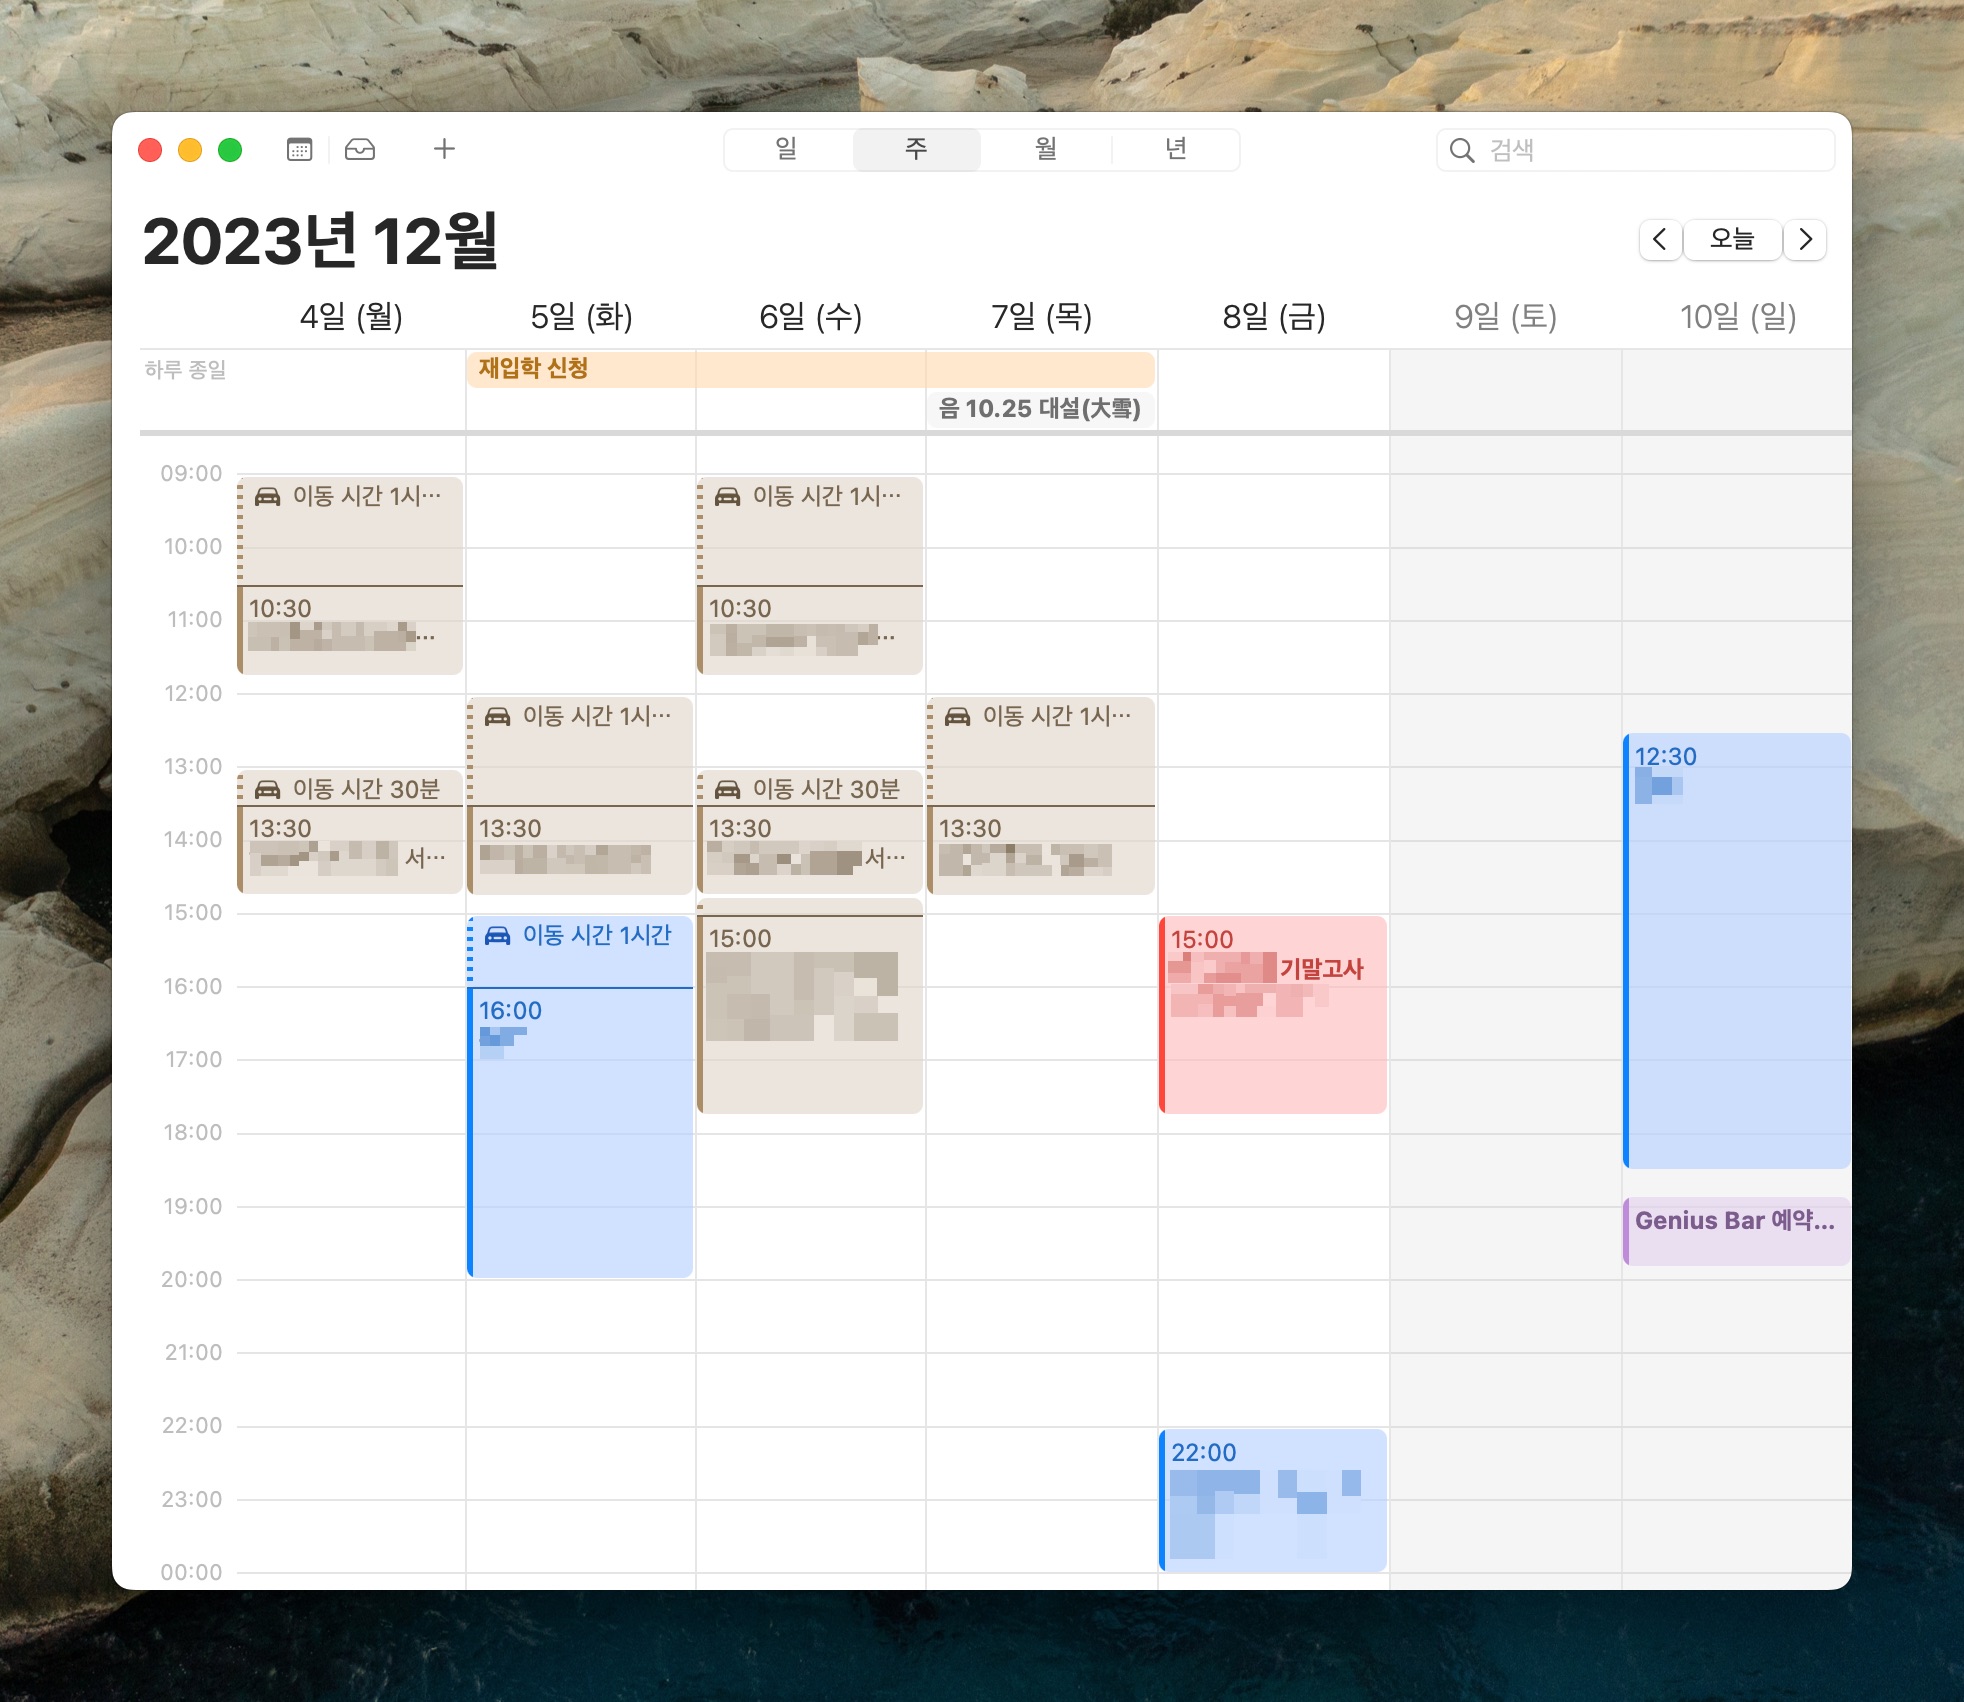 macOS 캘린더 앱 주간 보기 스크린샷, 여러 색상으로 된 캘린더의 이벤트들이 등록되어 있음